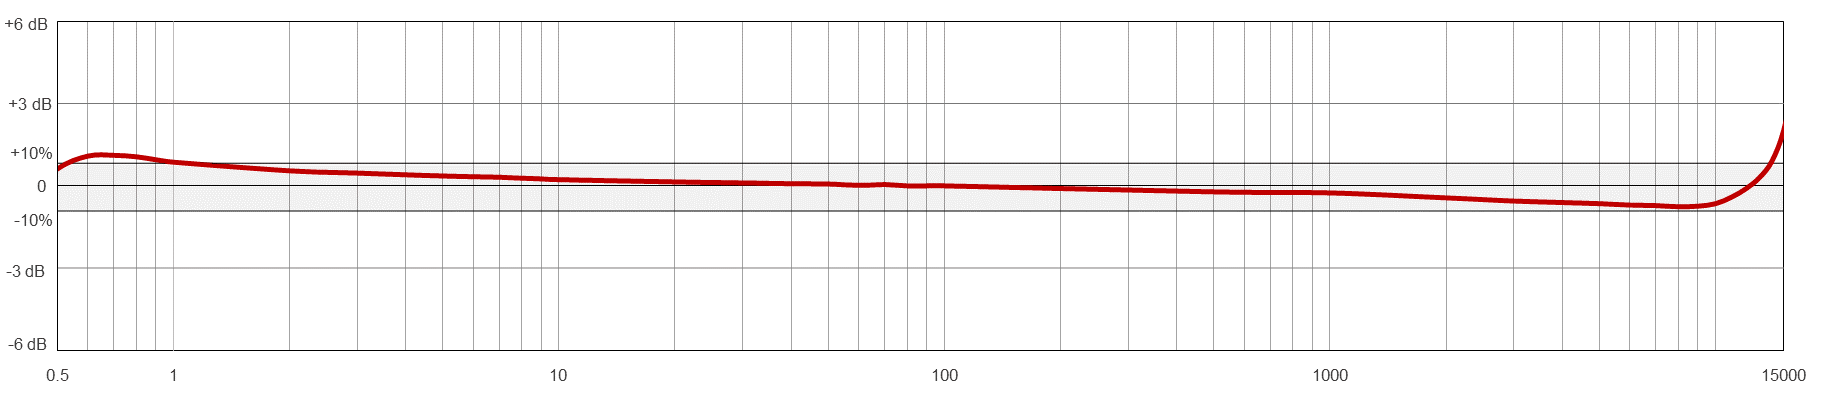 AC102-M12A典型频率响应